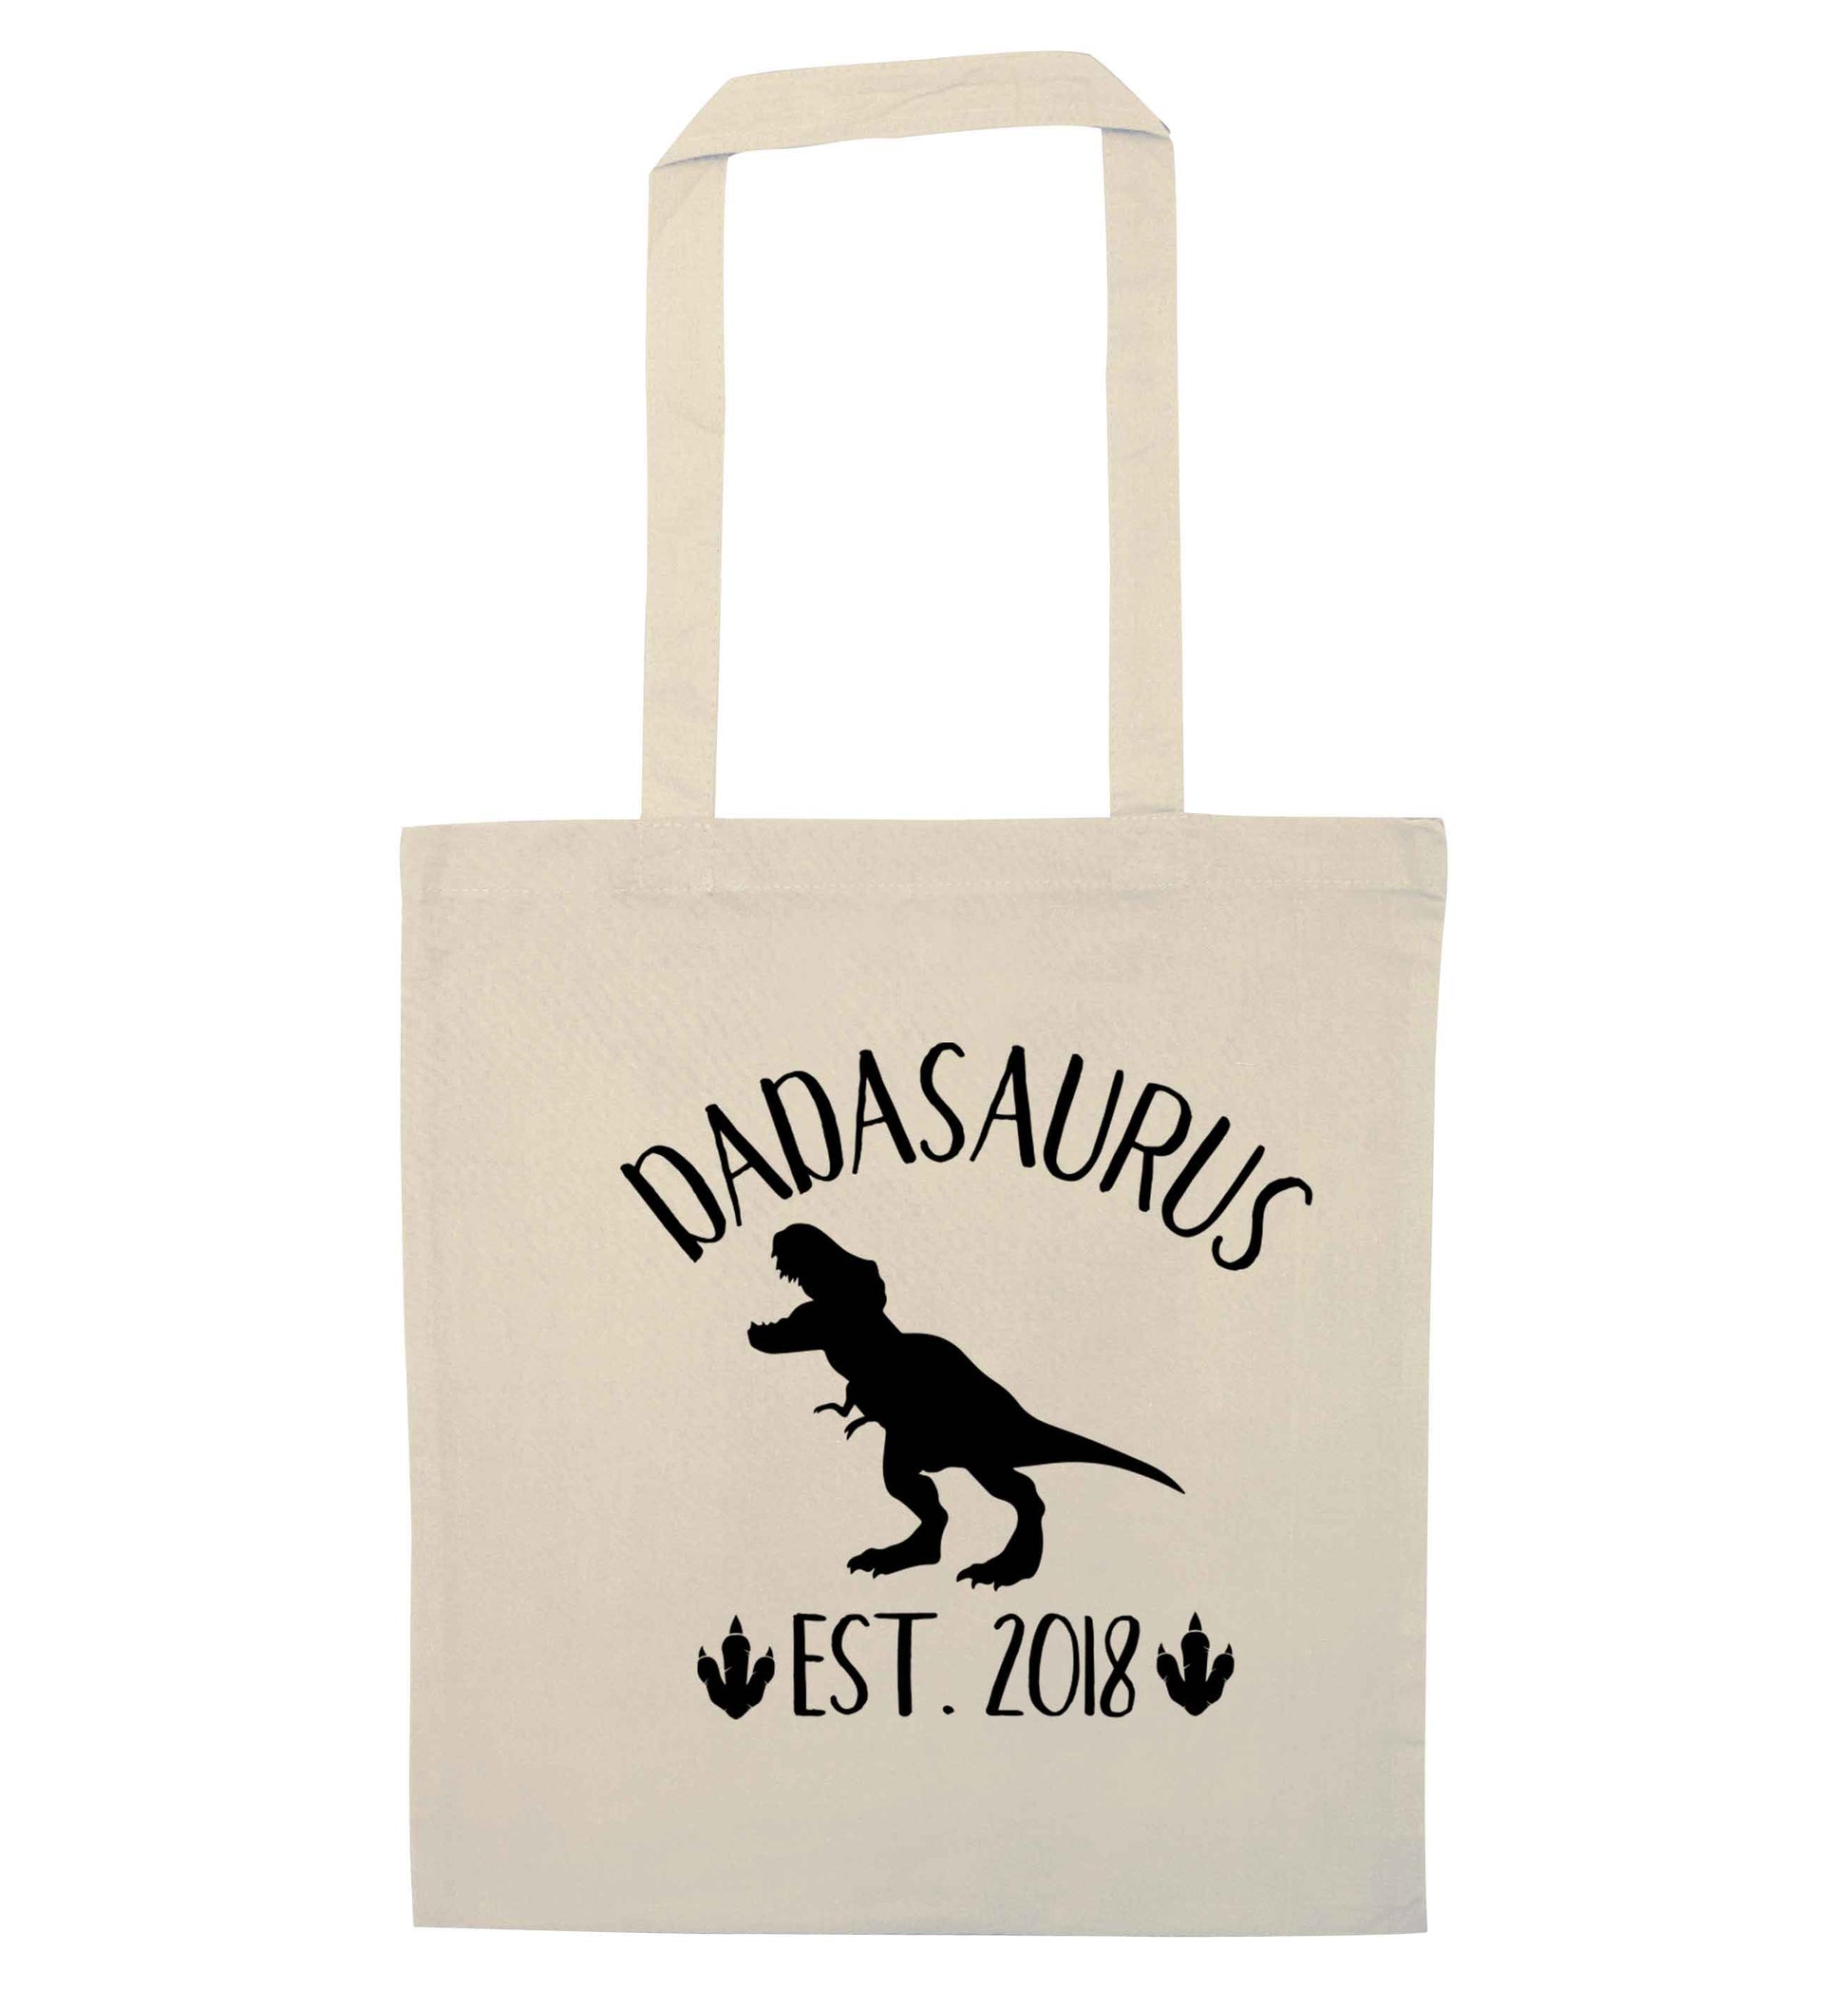 Personalised dadasaurus since (custom date) natural tote bag